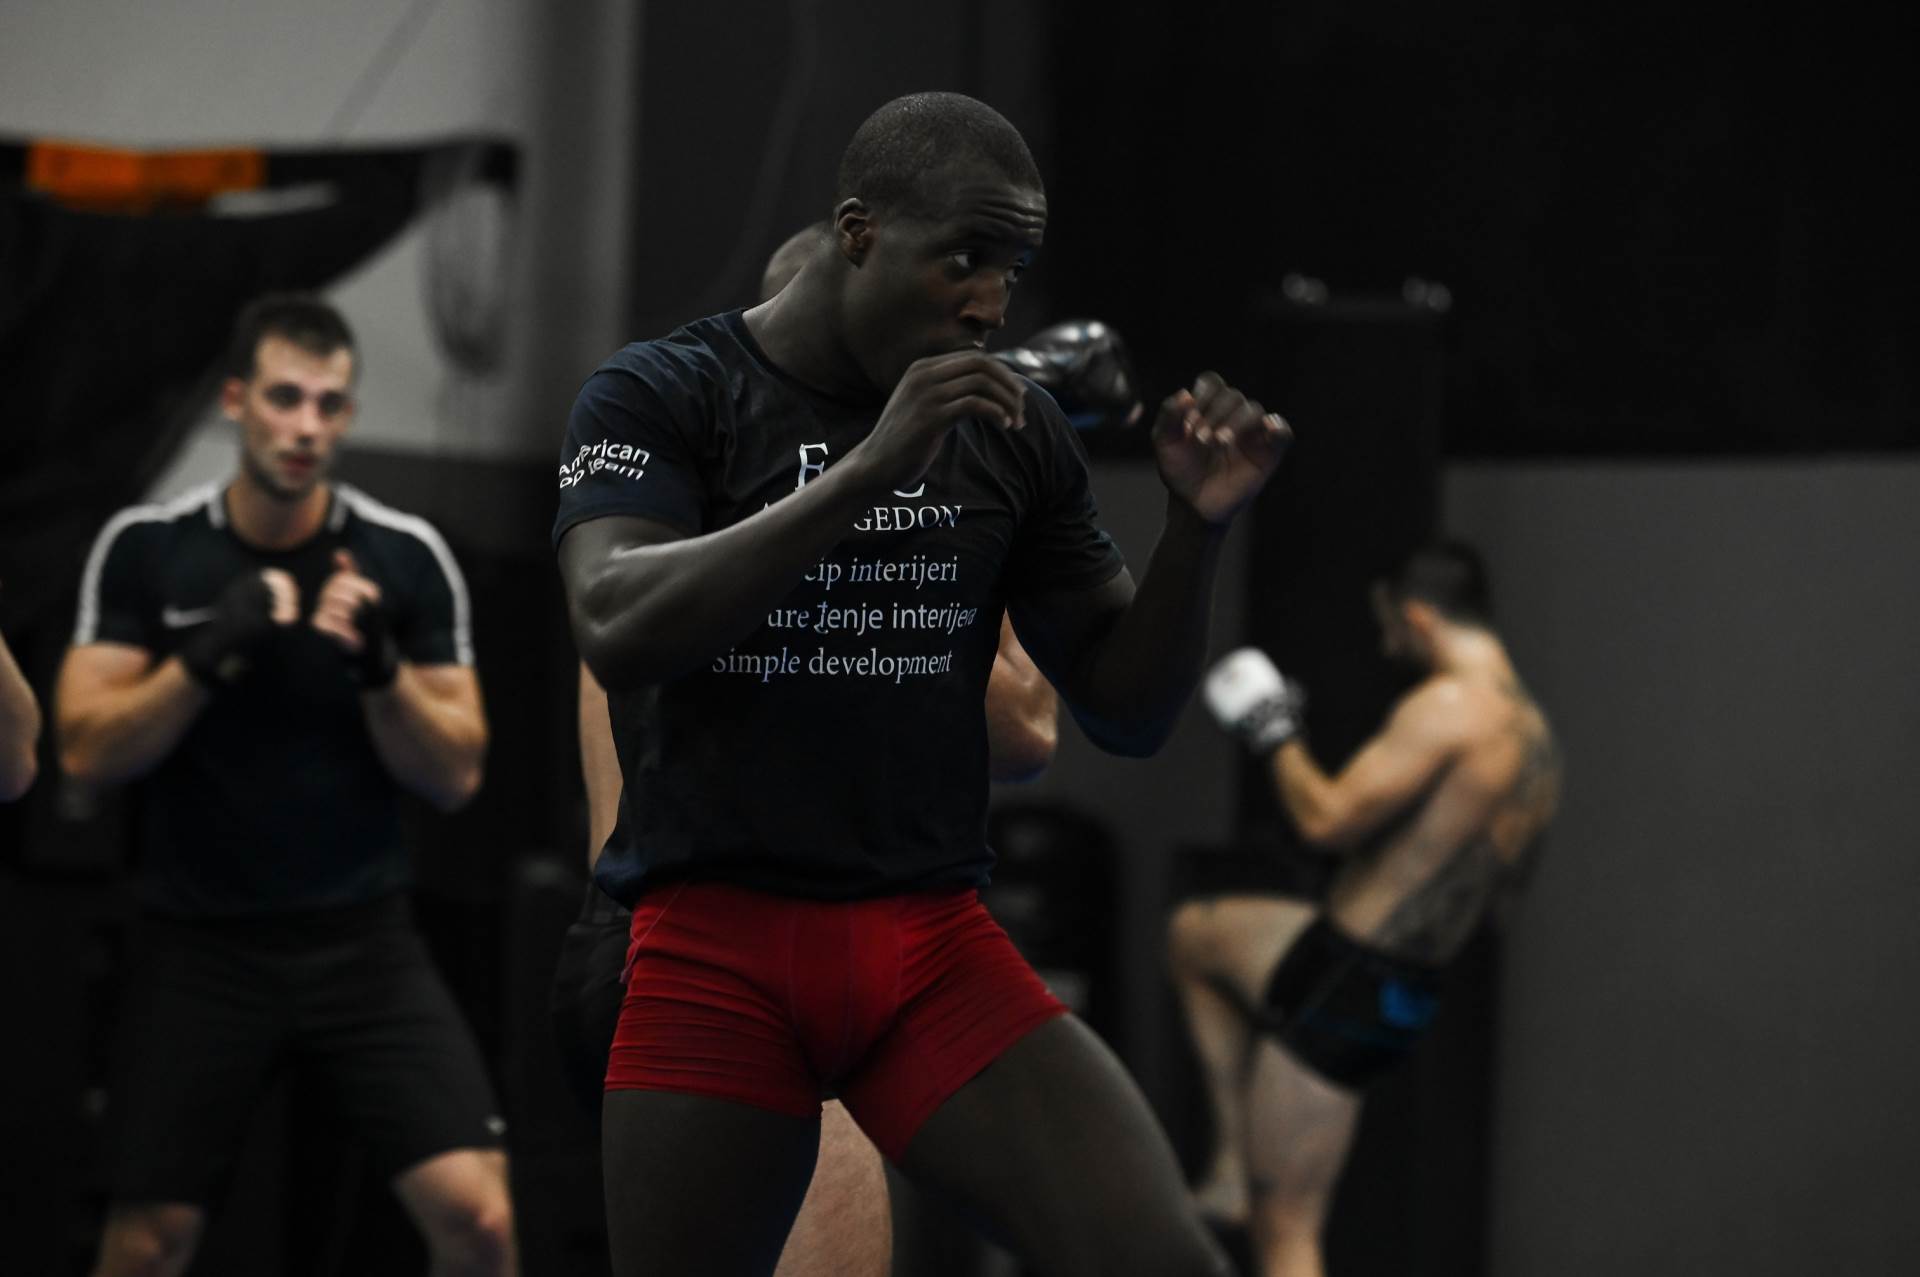 Domaći boksač: 'Rasizam ne razumijem i ne želim razumjeti'